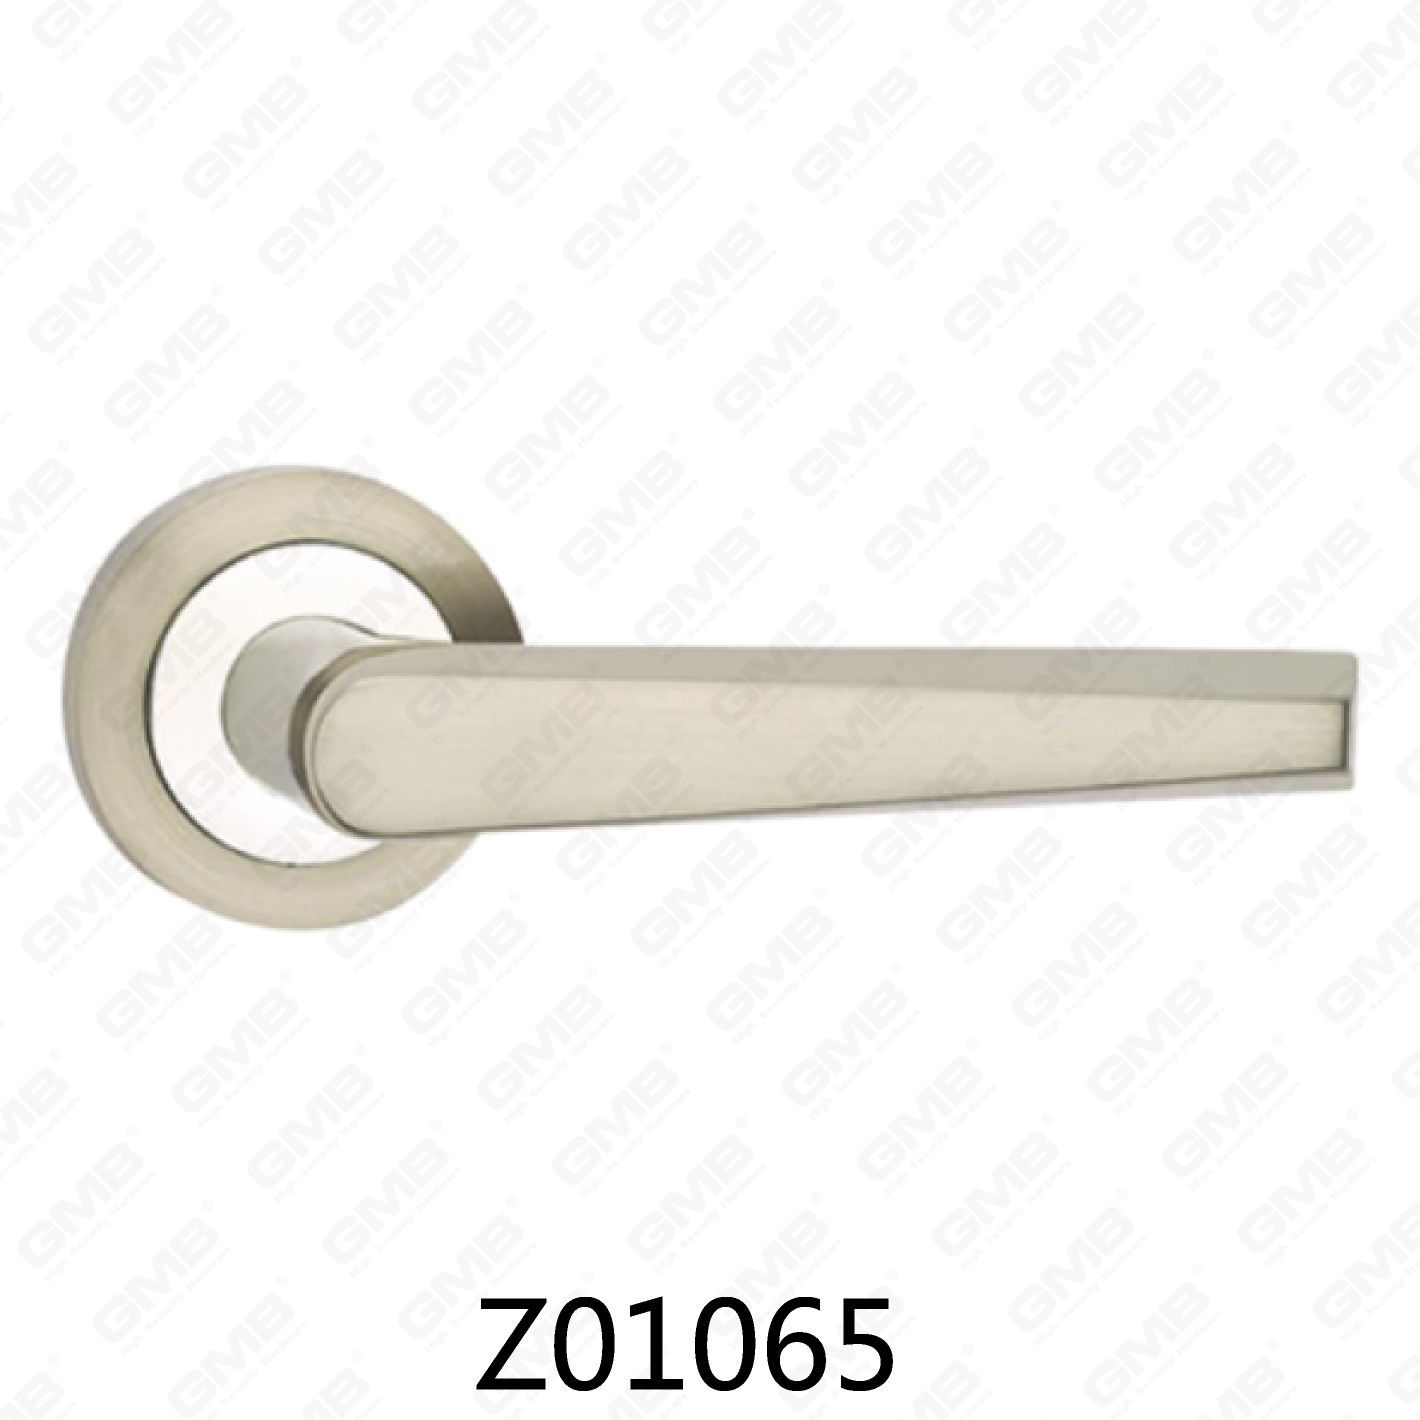 ידית דלת רוזטת אלומיניום מסגסוגת אבץ של Zamak עם רוזטה עגולה (Z01065)